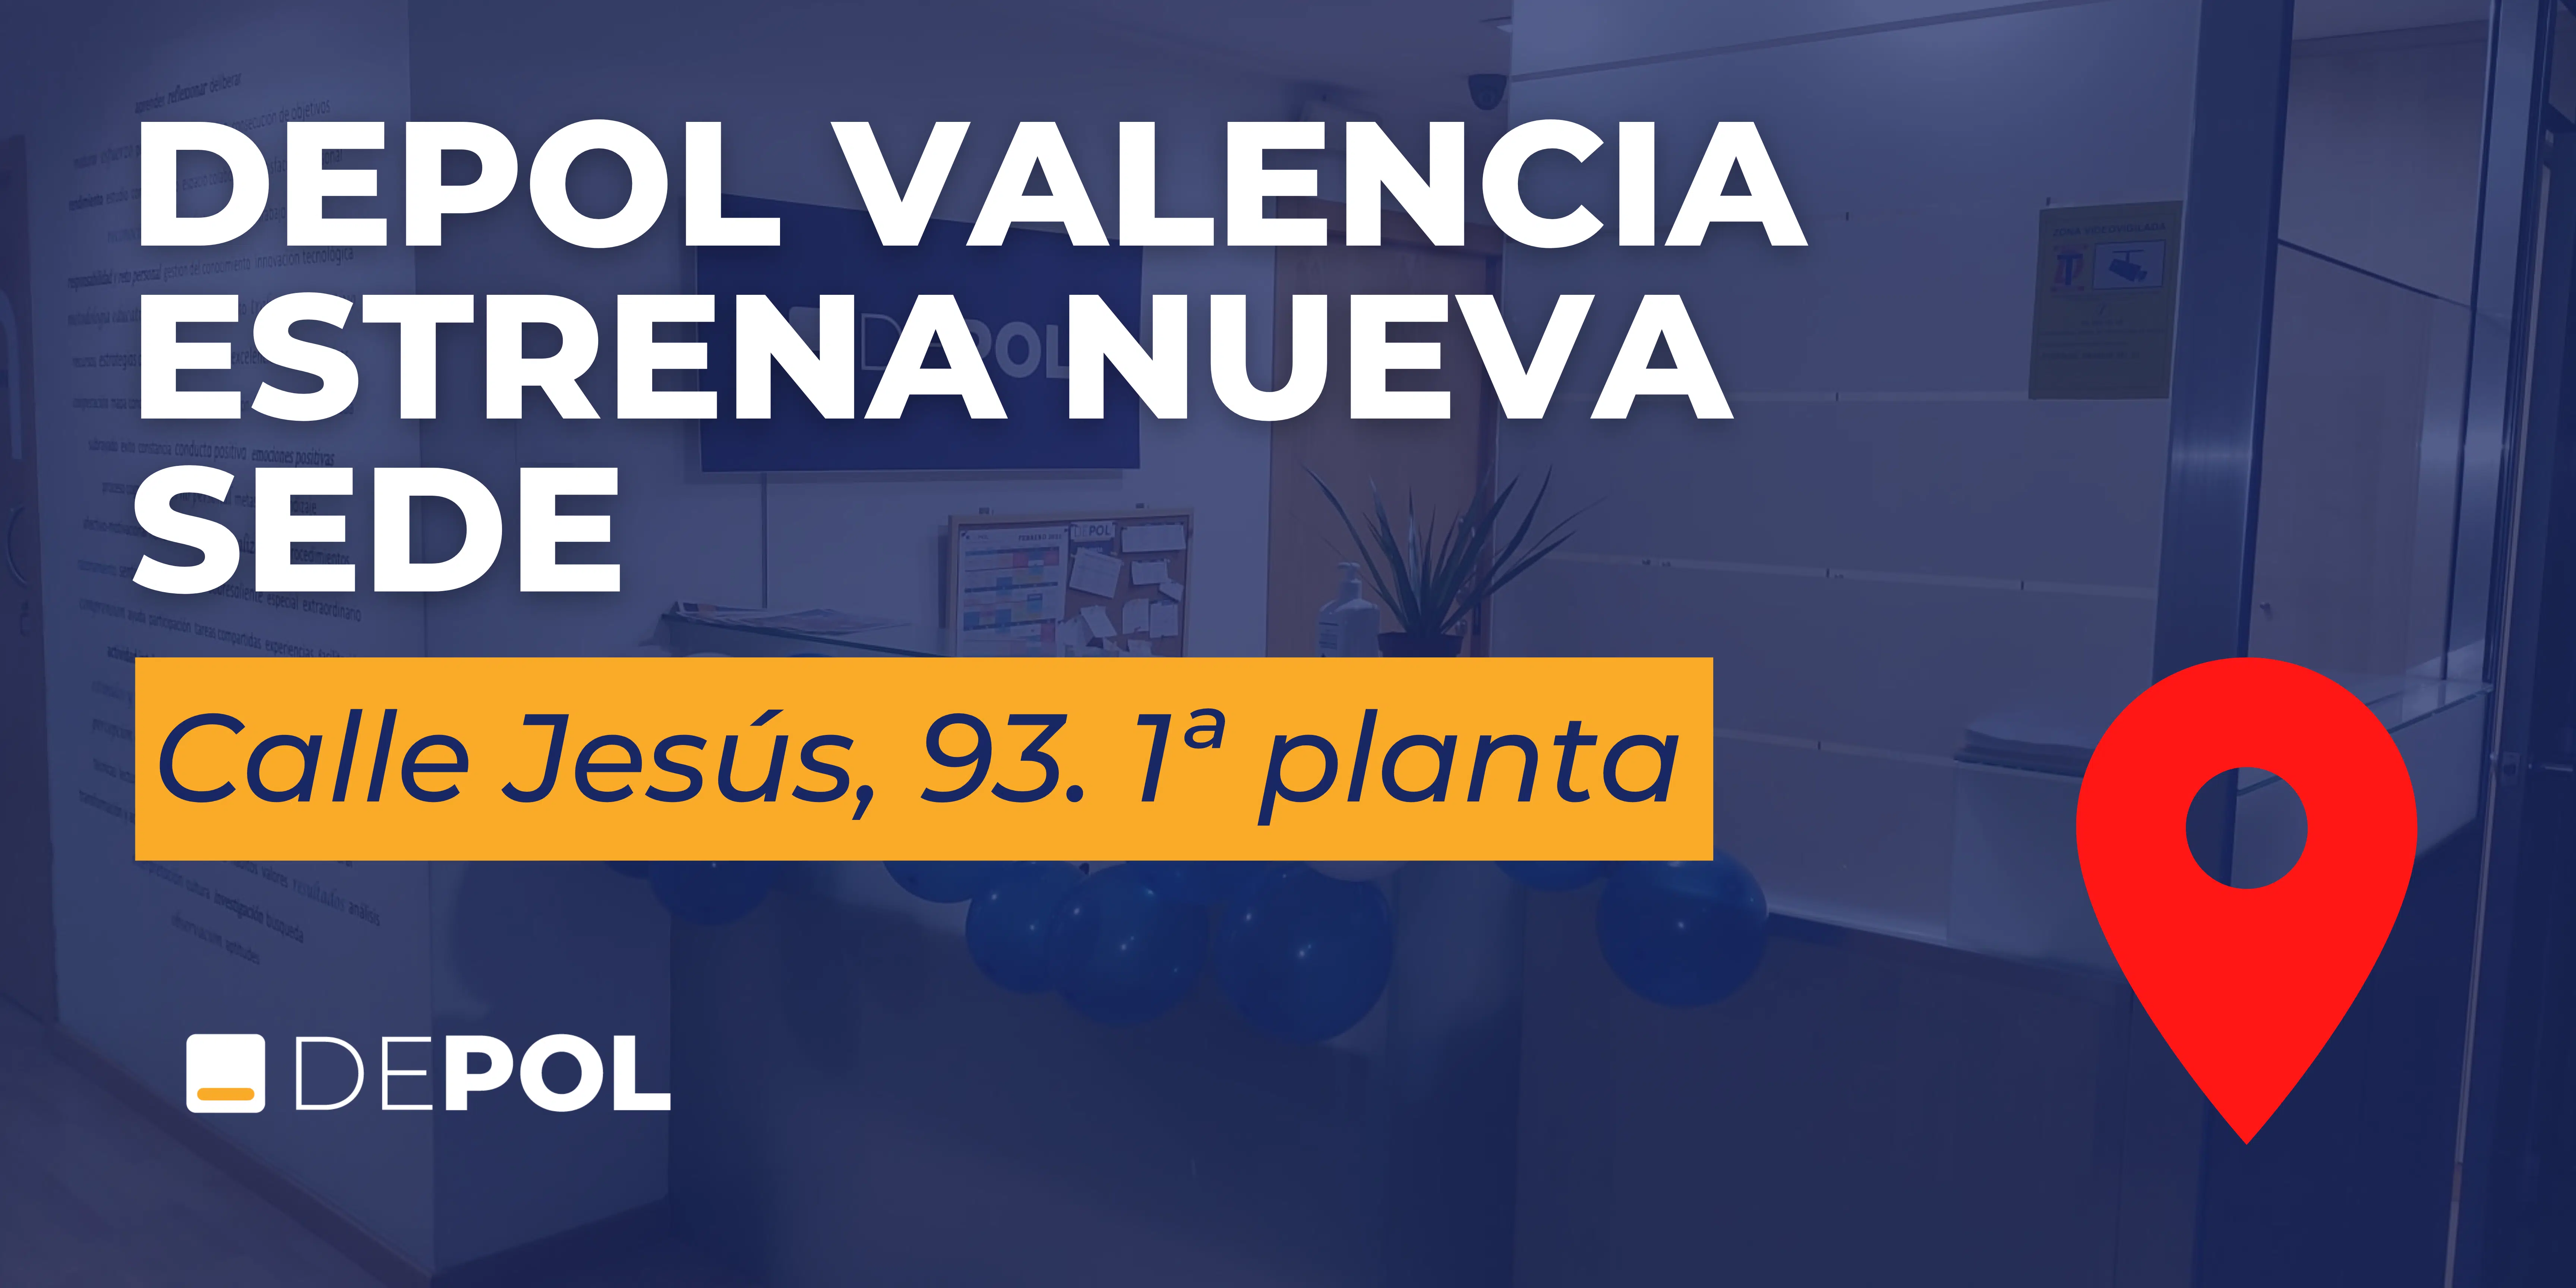 DEPOL Valencia estrena nueva sede